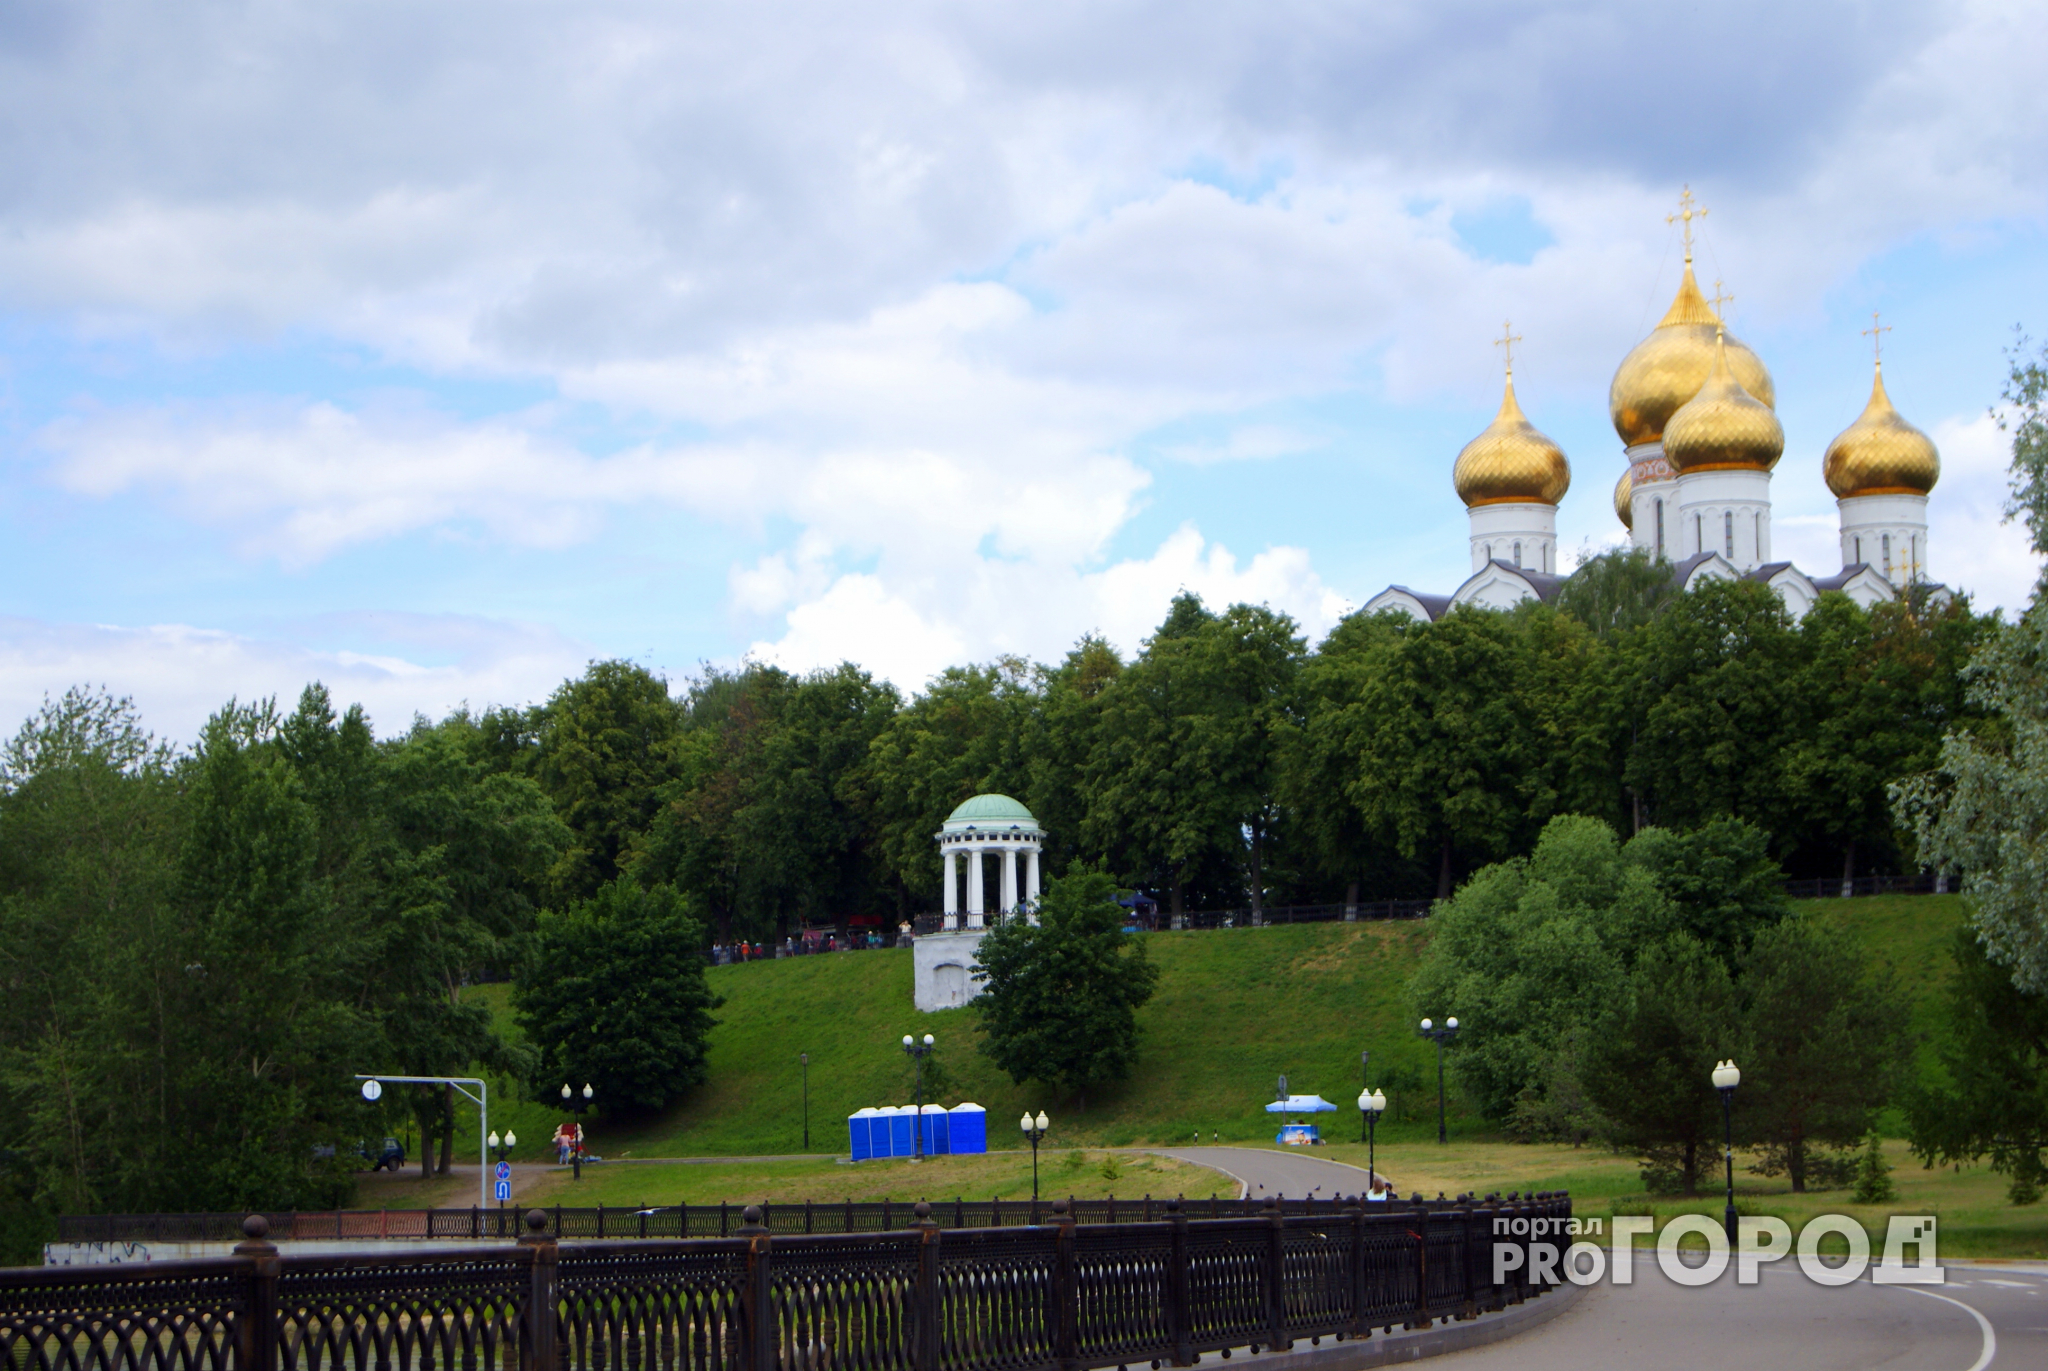 Ярославль попал в топ самых популярных среди туристов российских городов